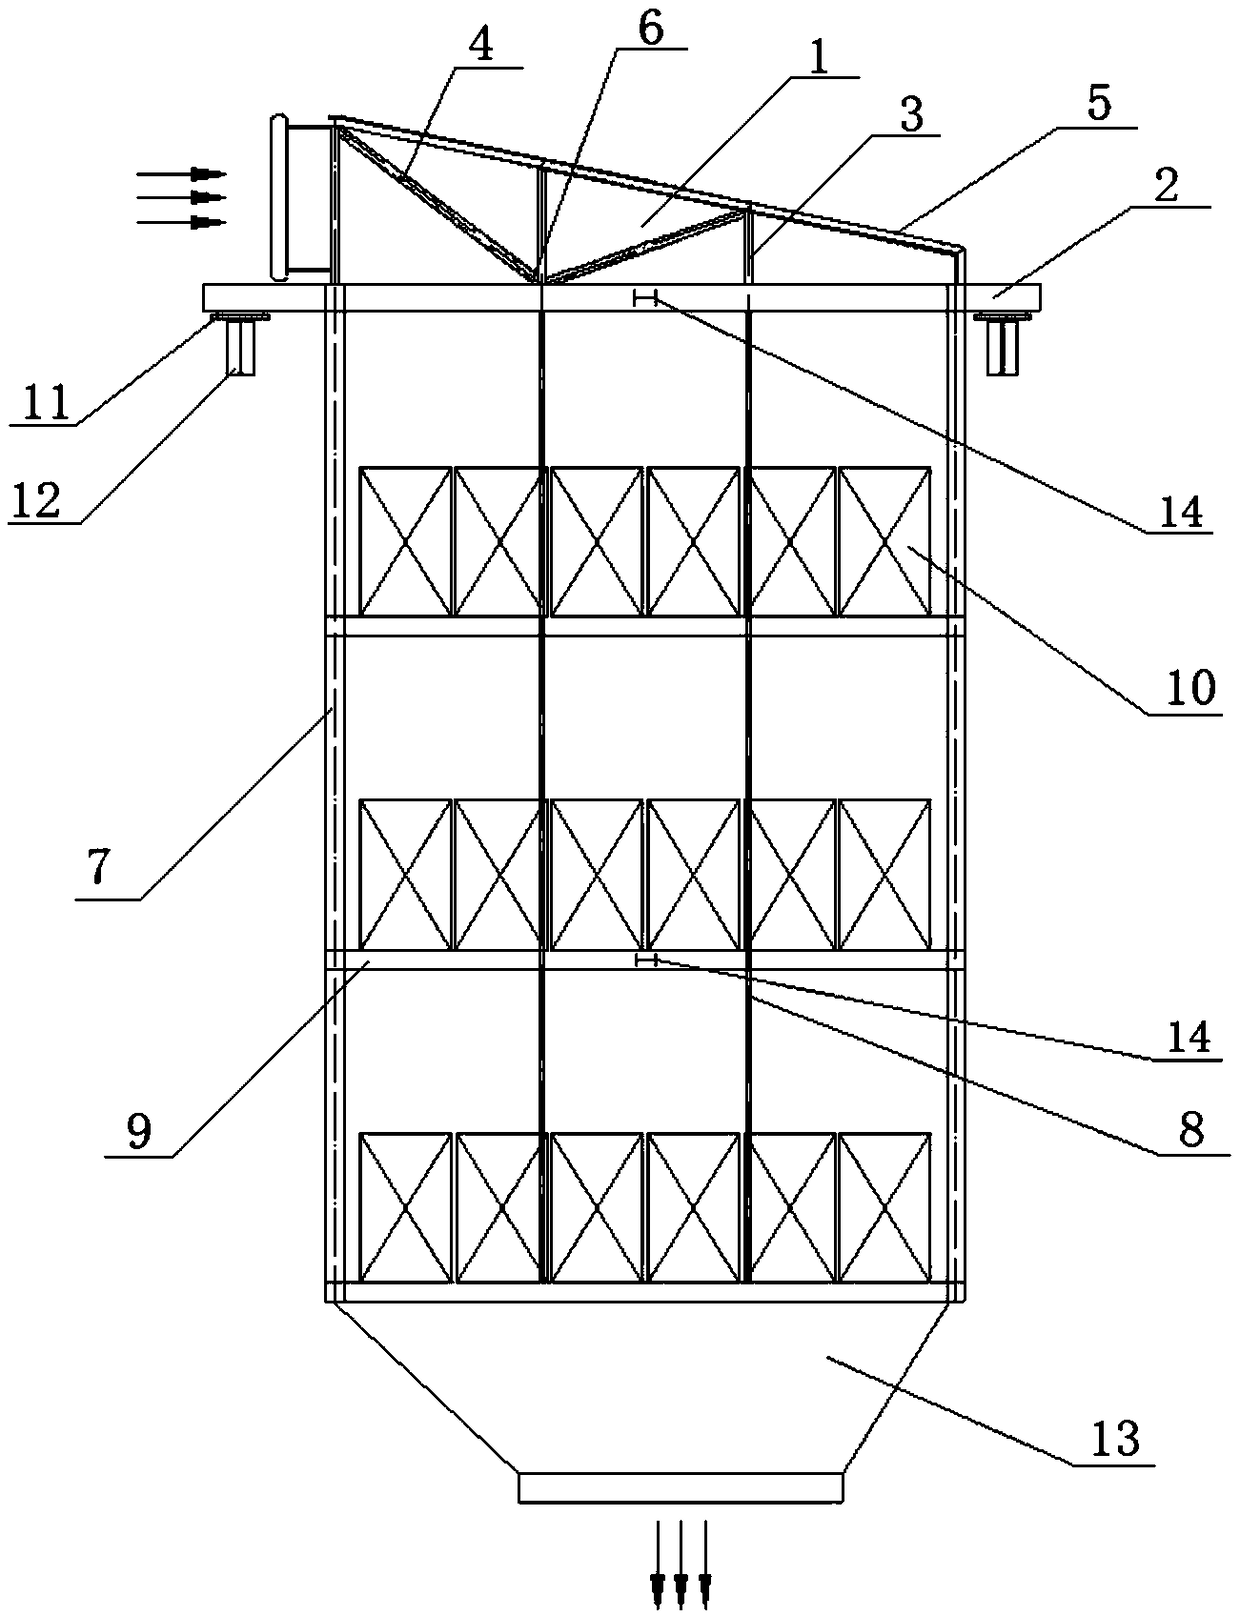 Inlet flue triangular truss suspension type denitration reactor device